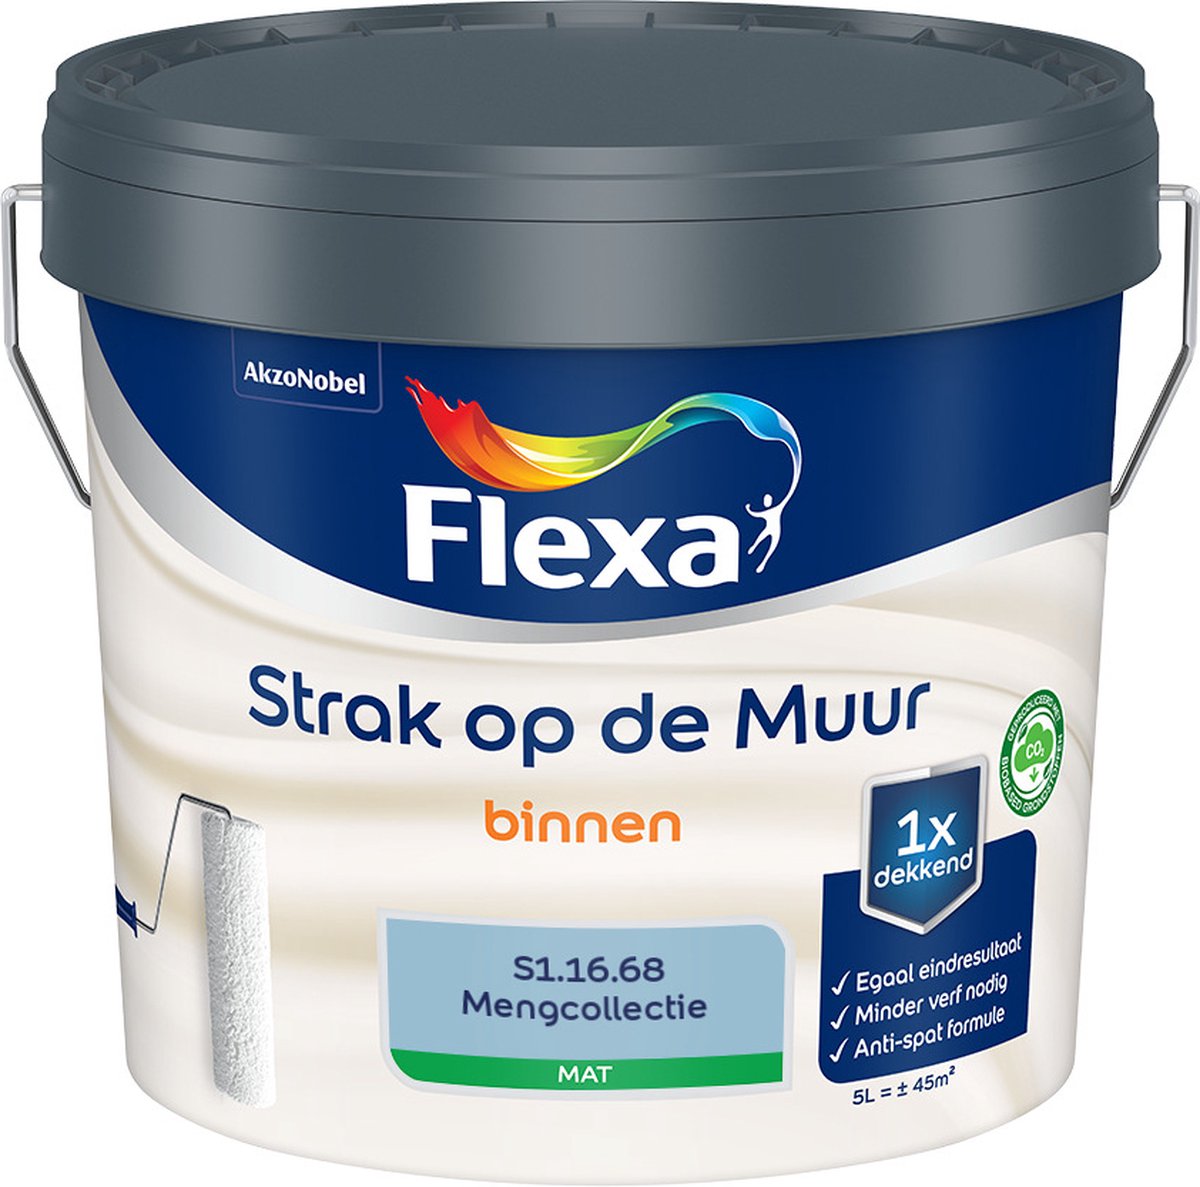 Flexa Strak op de muur - Muurverf - Mengcollectie - S1.16.68 - 5 Liter